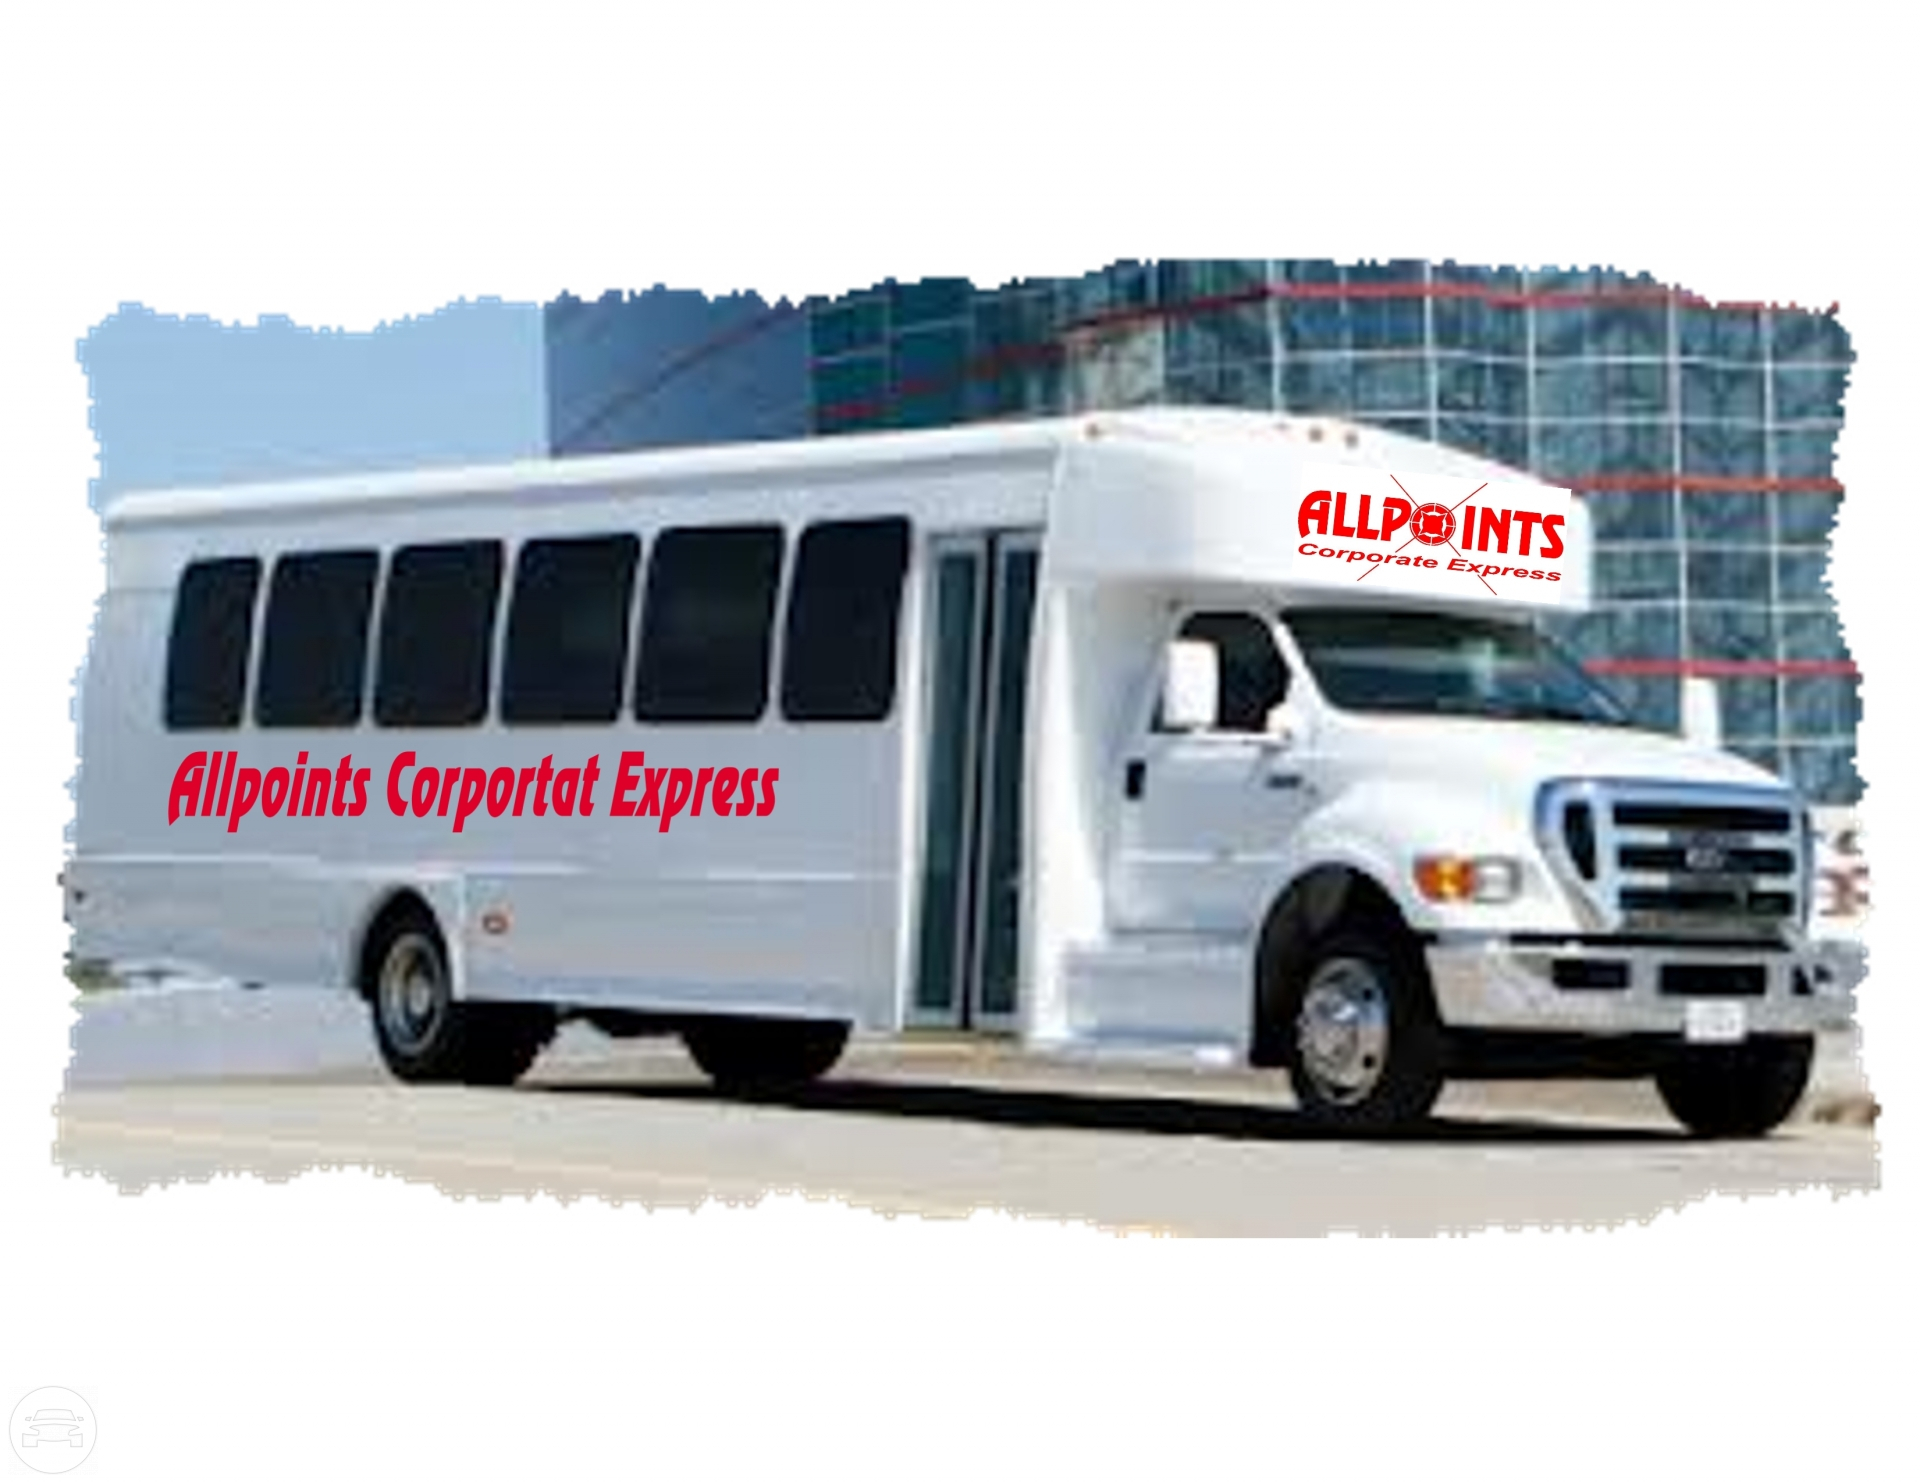 MINI BUS
Coach Bus /
Dallas, TX

 / Hourly $0.00
